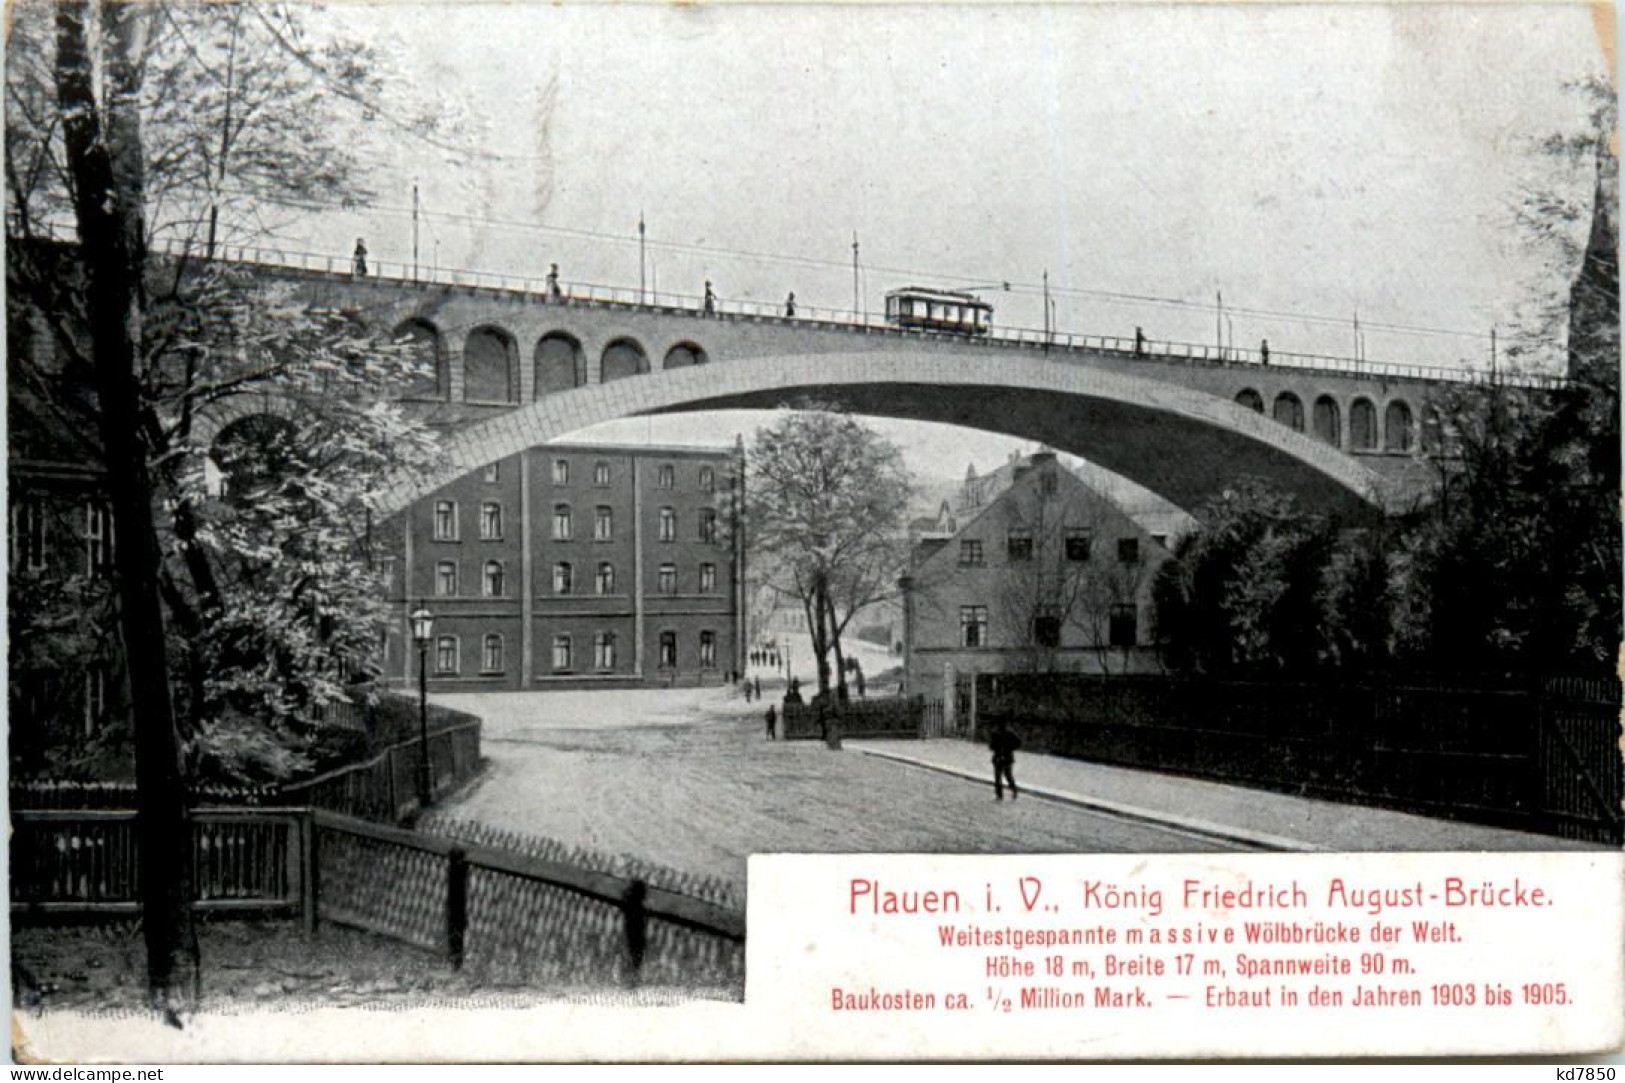 Plauen I.V., König Friedrich August-Brücke - Plauen